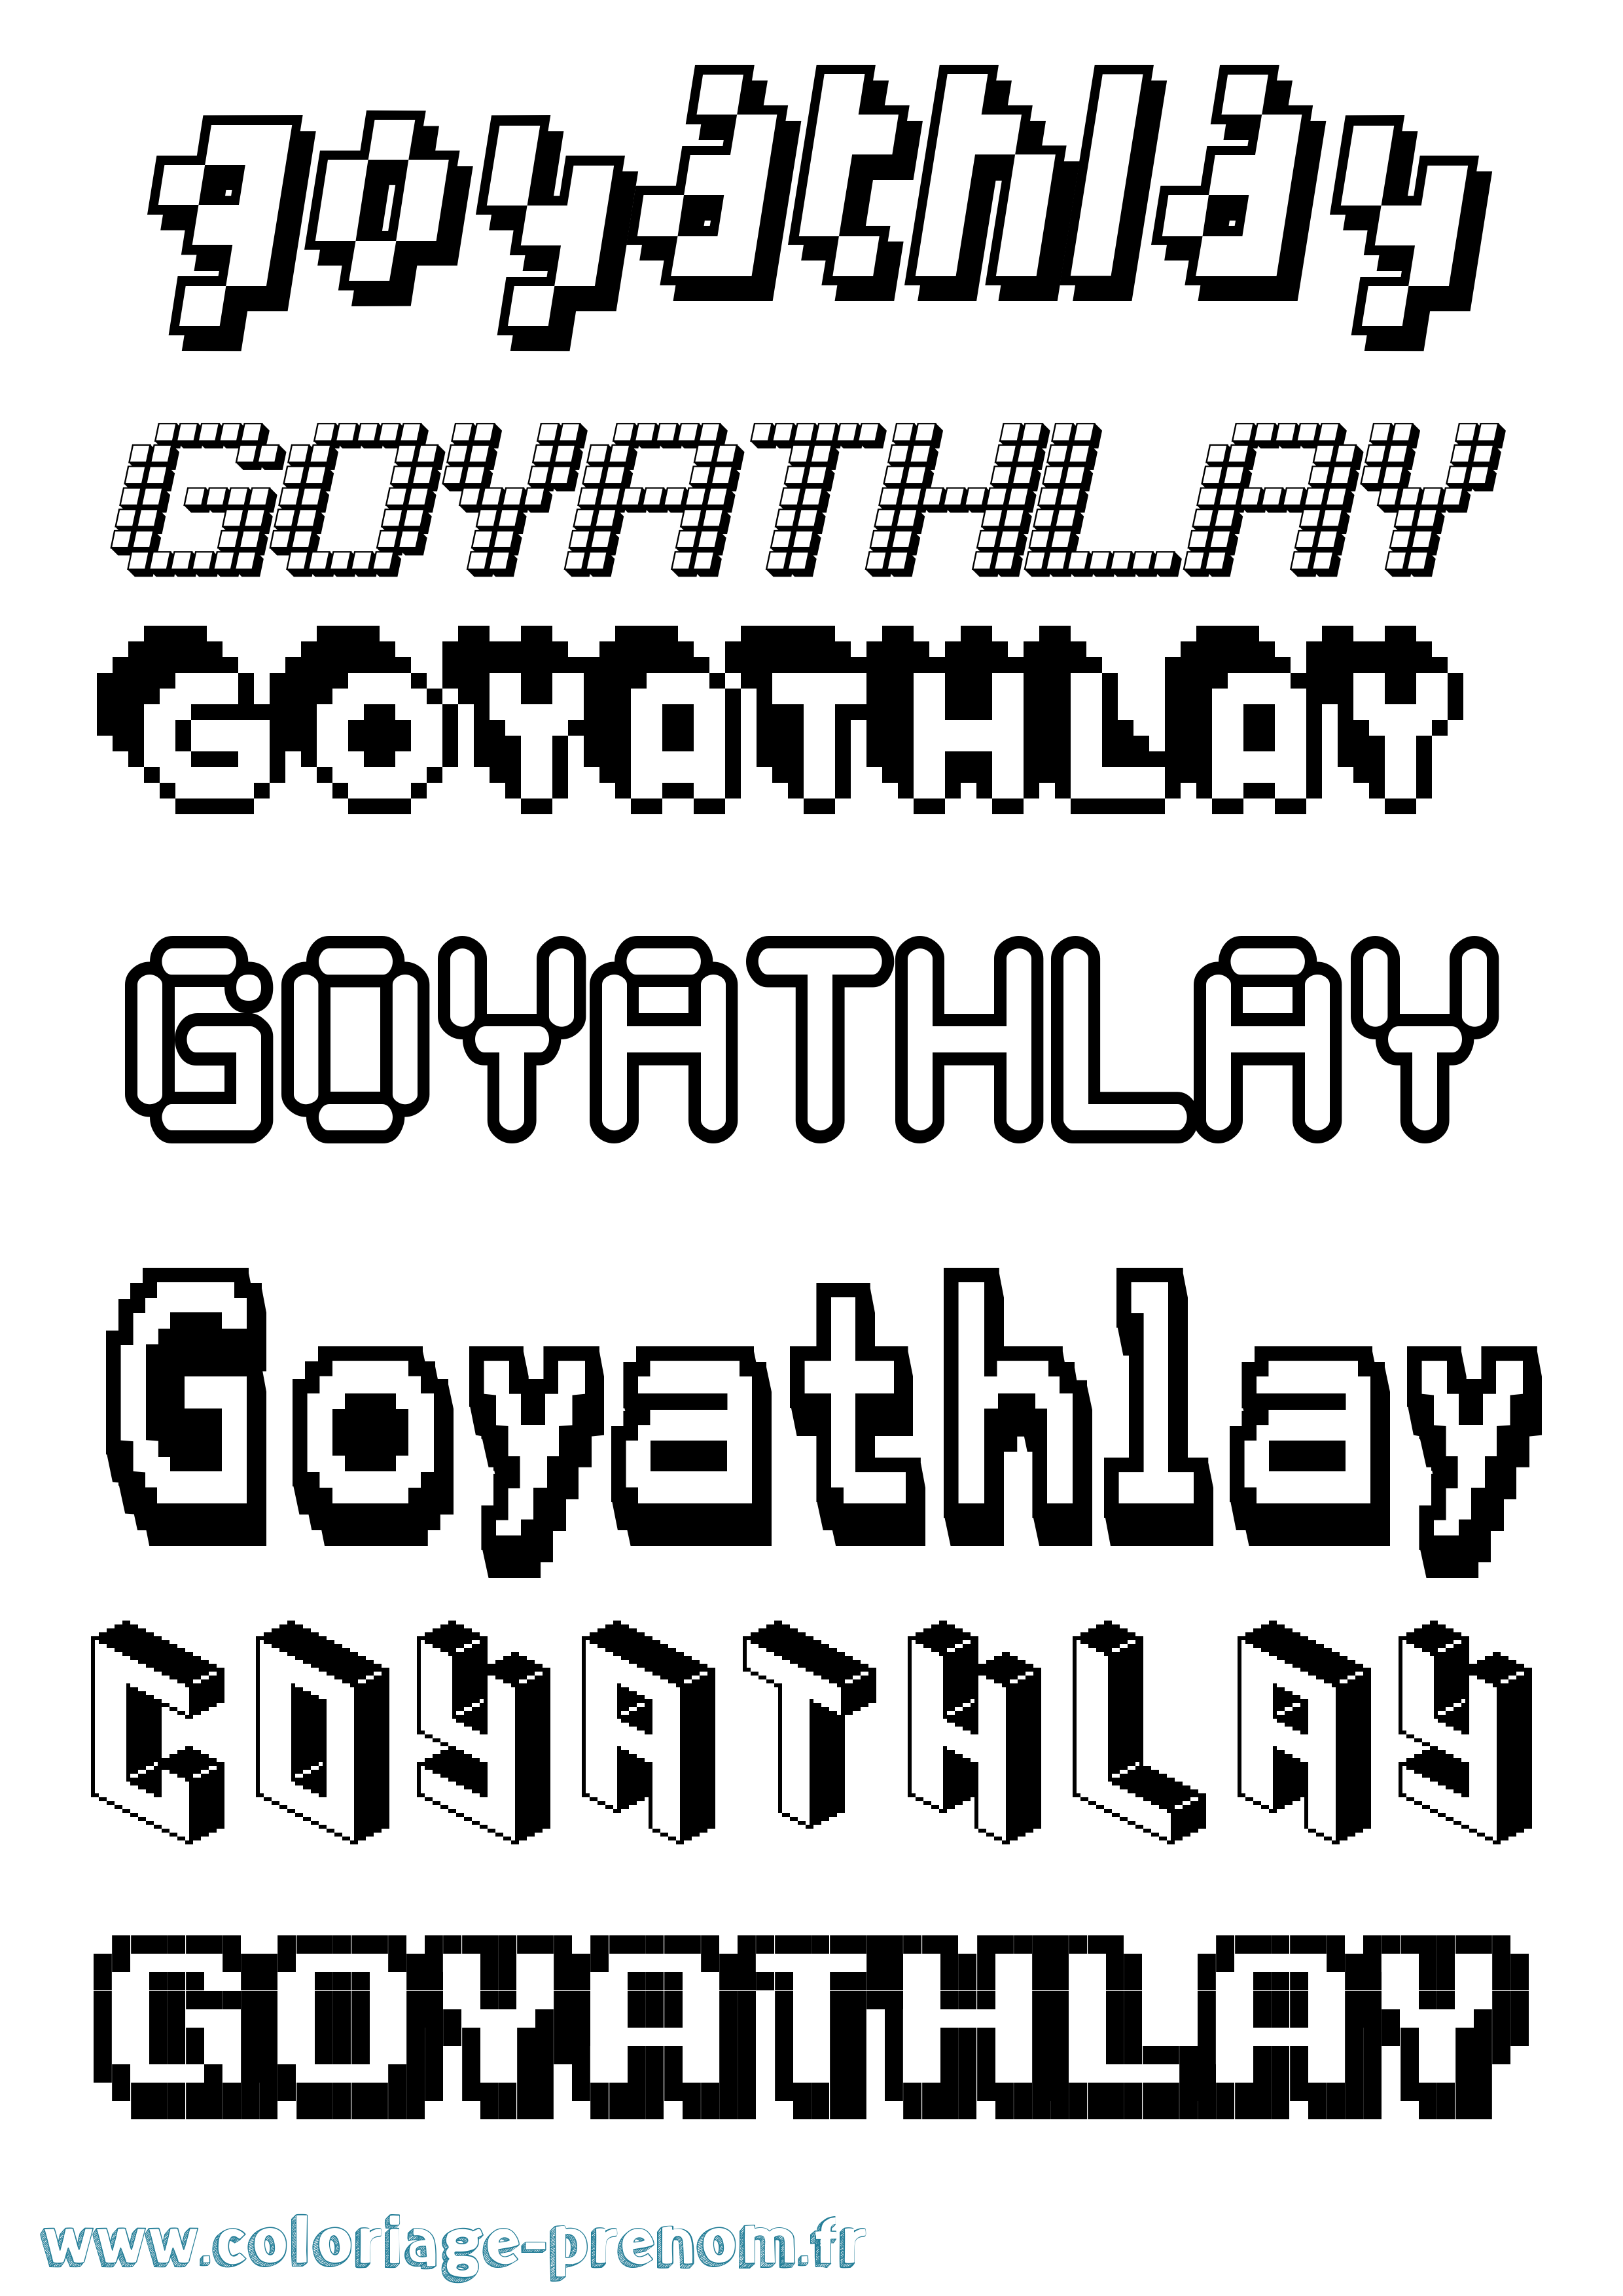 Coloriage prénom Goyathlay Pixel